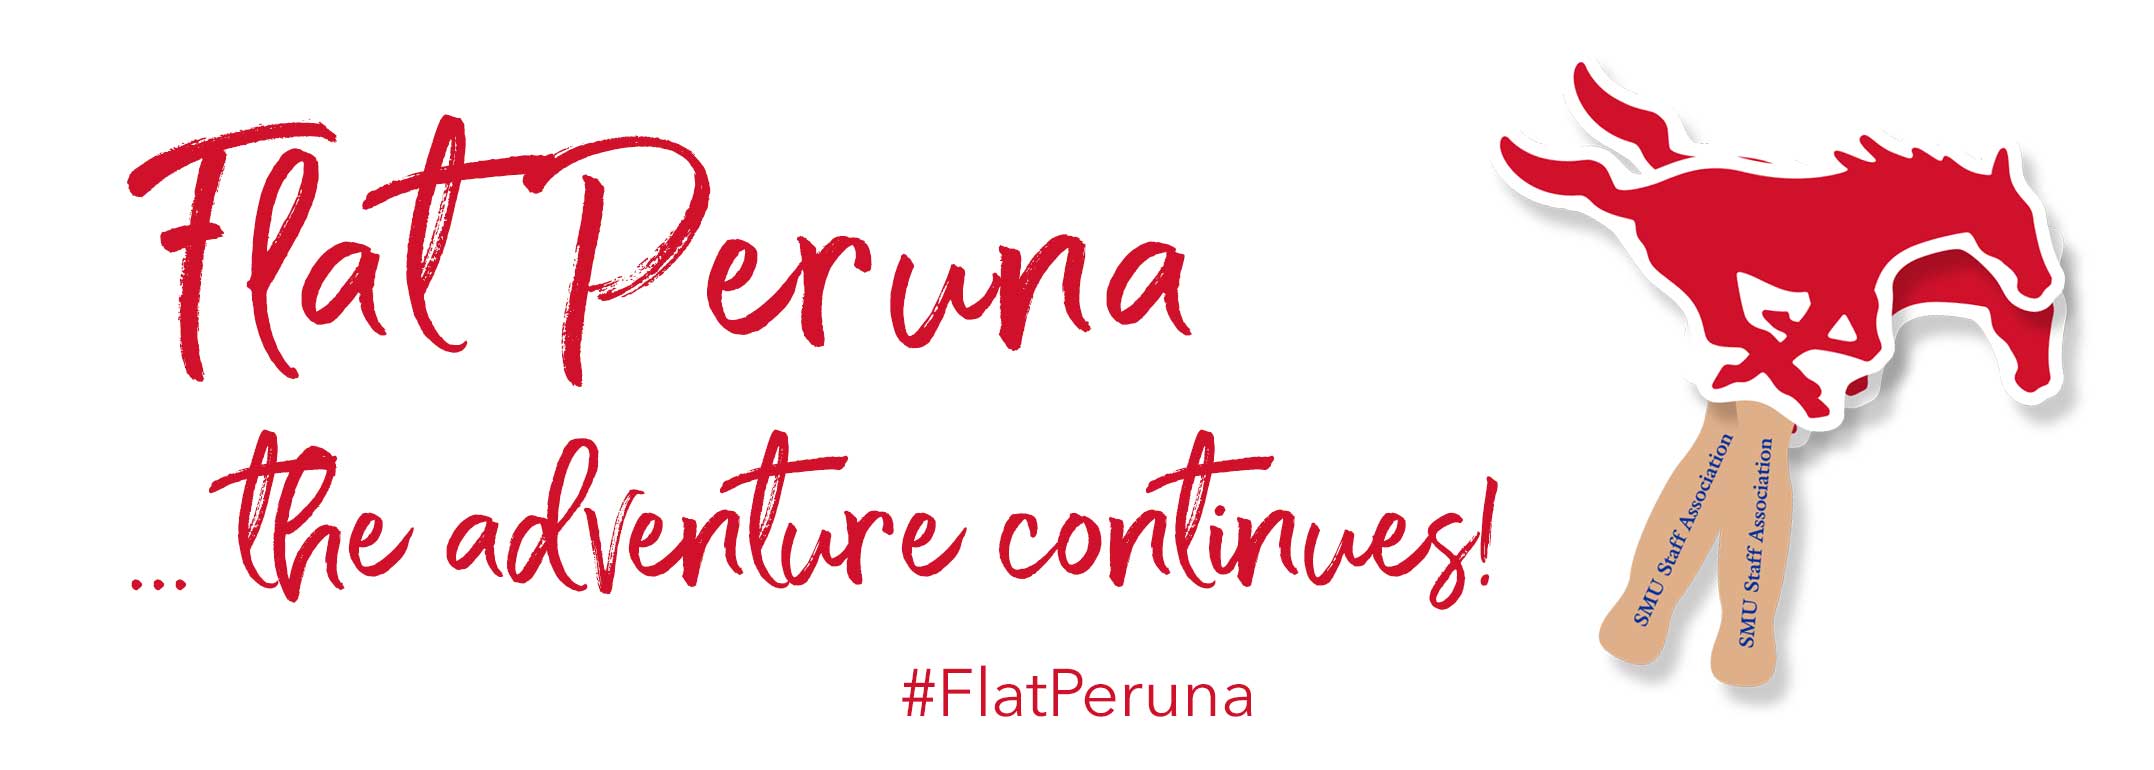 Flat Peruna ... the adventure continues!